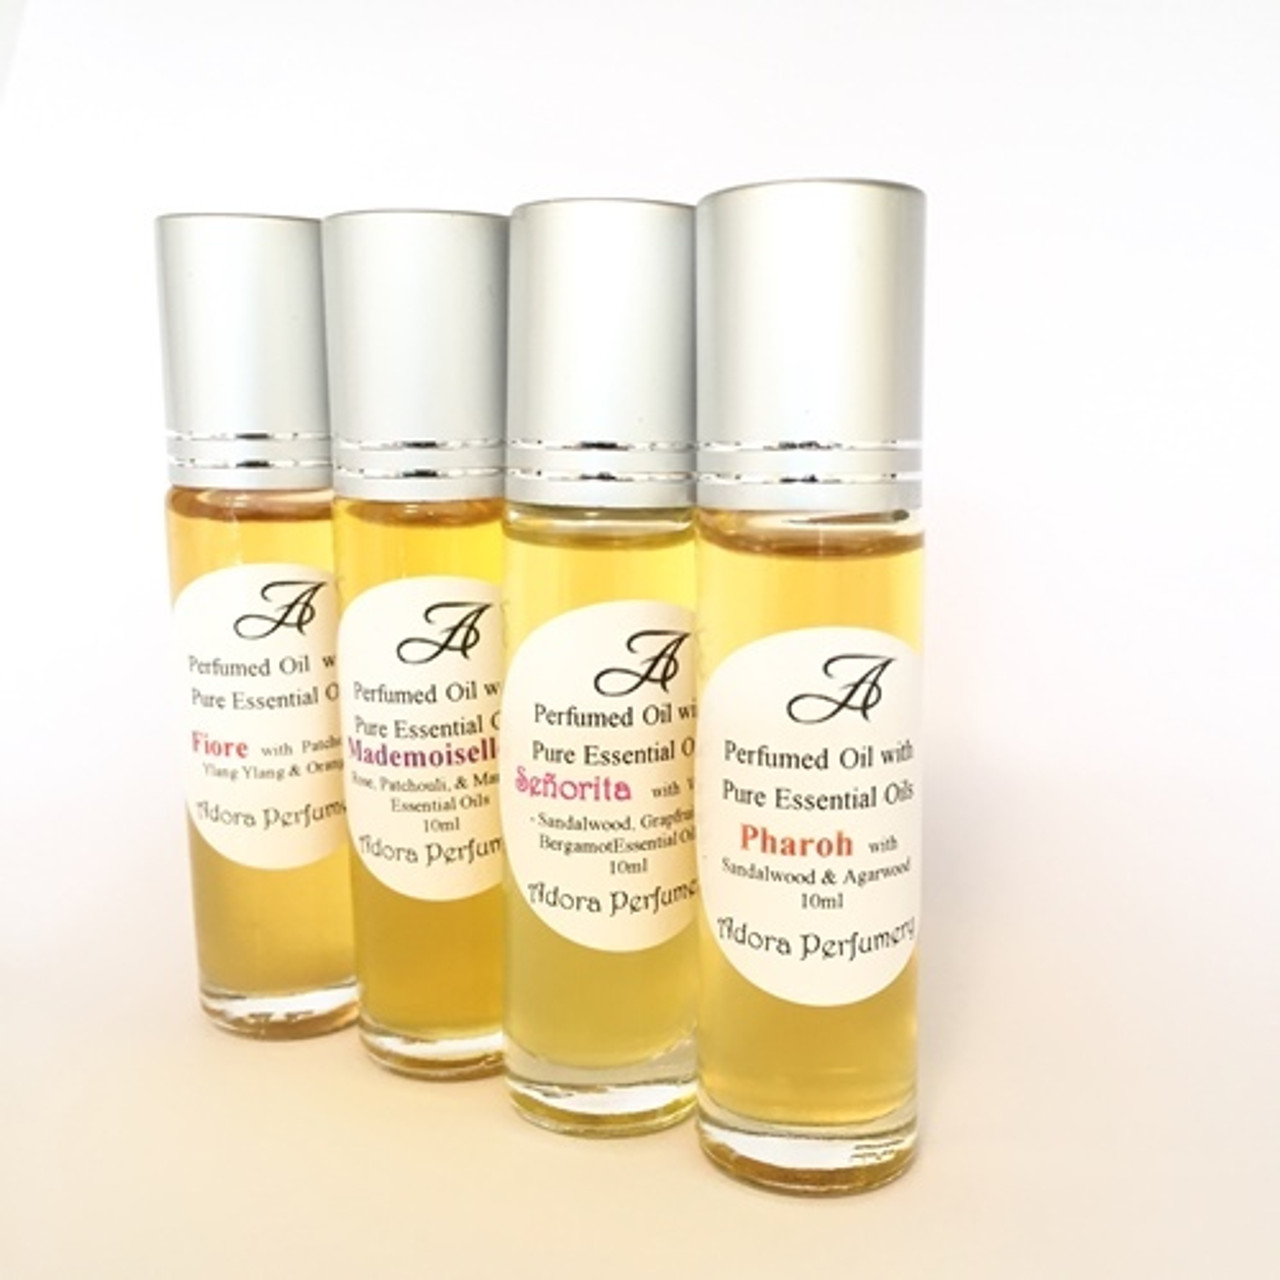 Perfumed Oils